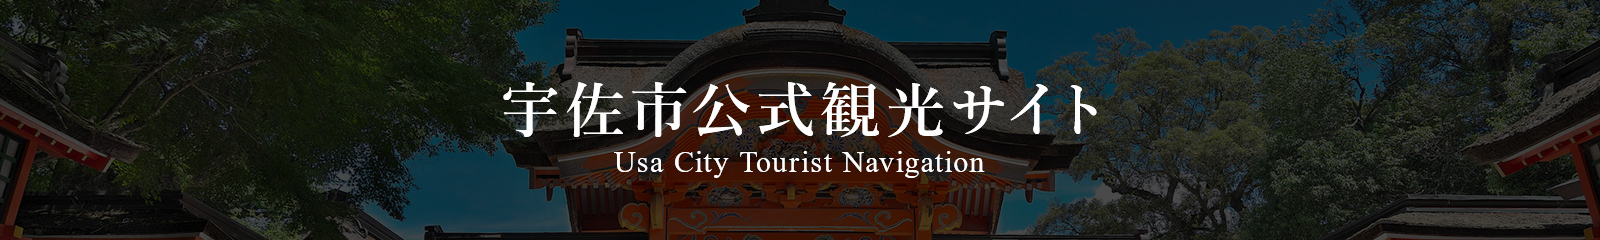 宇佐市公式観光サイト Usa City Tourist Navigation